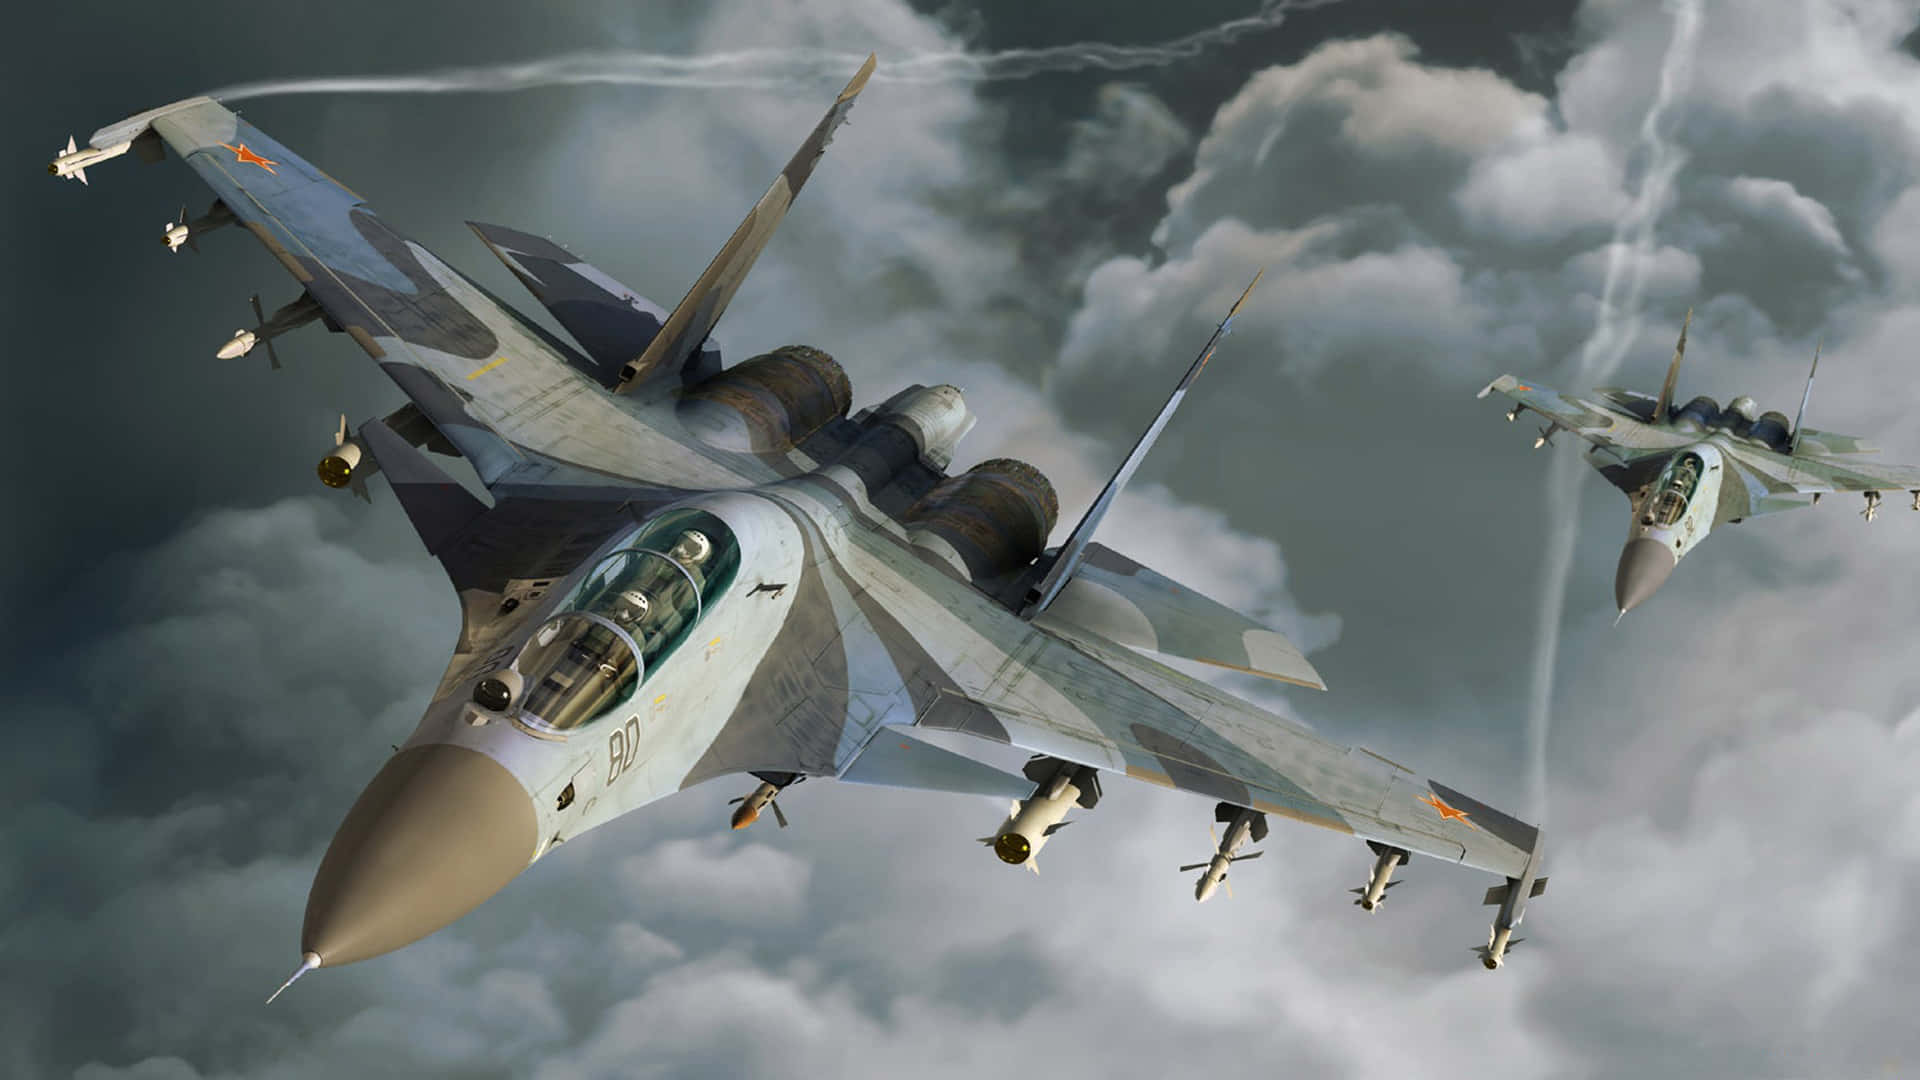 Fondode Pantalla De Aviones Jumbo Su-27 Sukhoi En Resolución 1080p Sobre Un Fondo De Nubes.